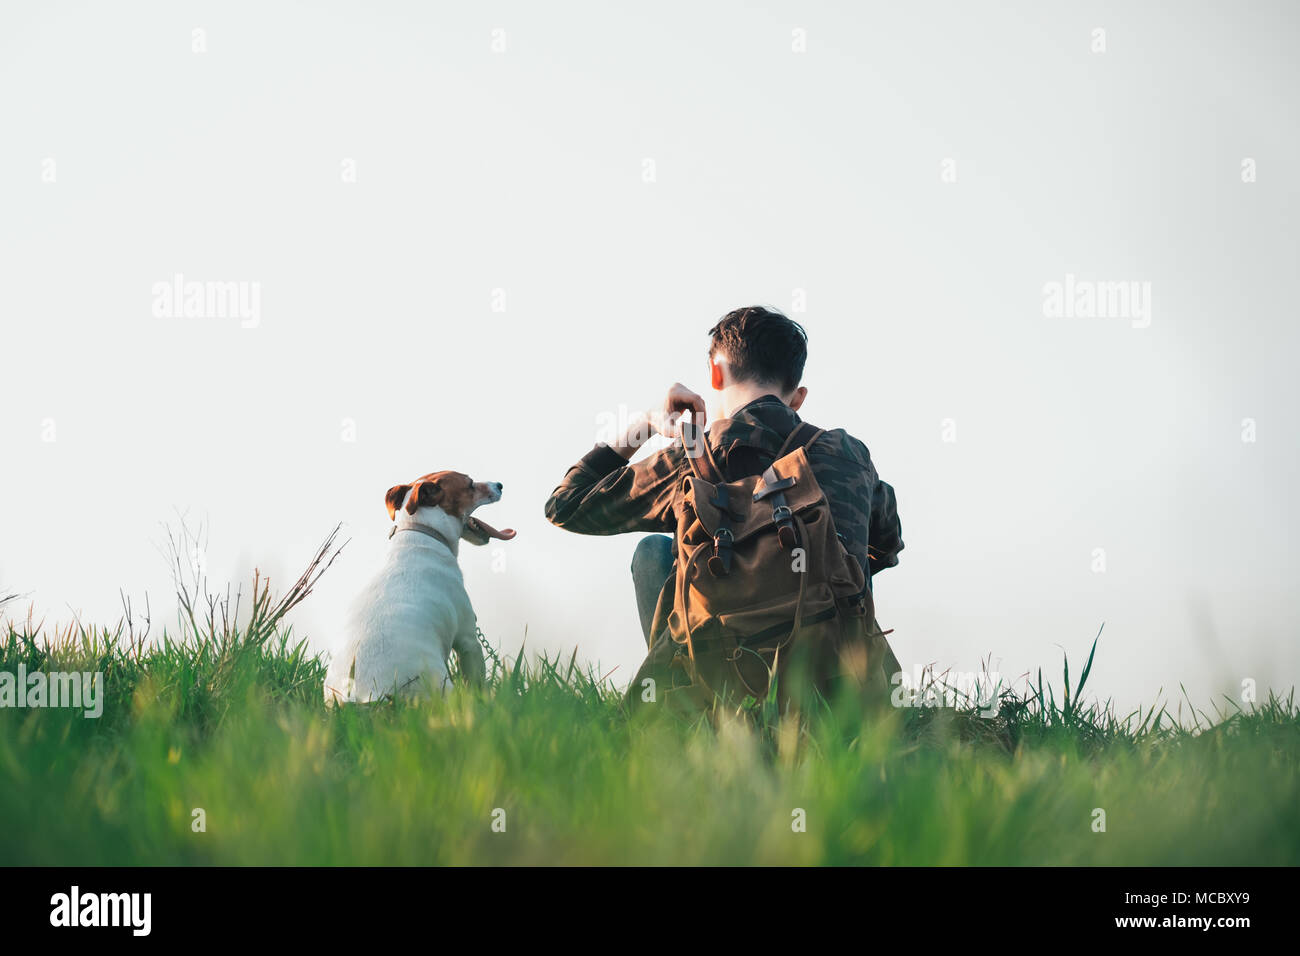 Adolescente sul prato verde con un piccolo cane bianco Foto Stock